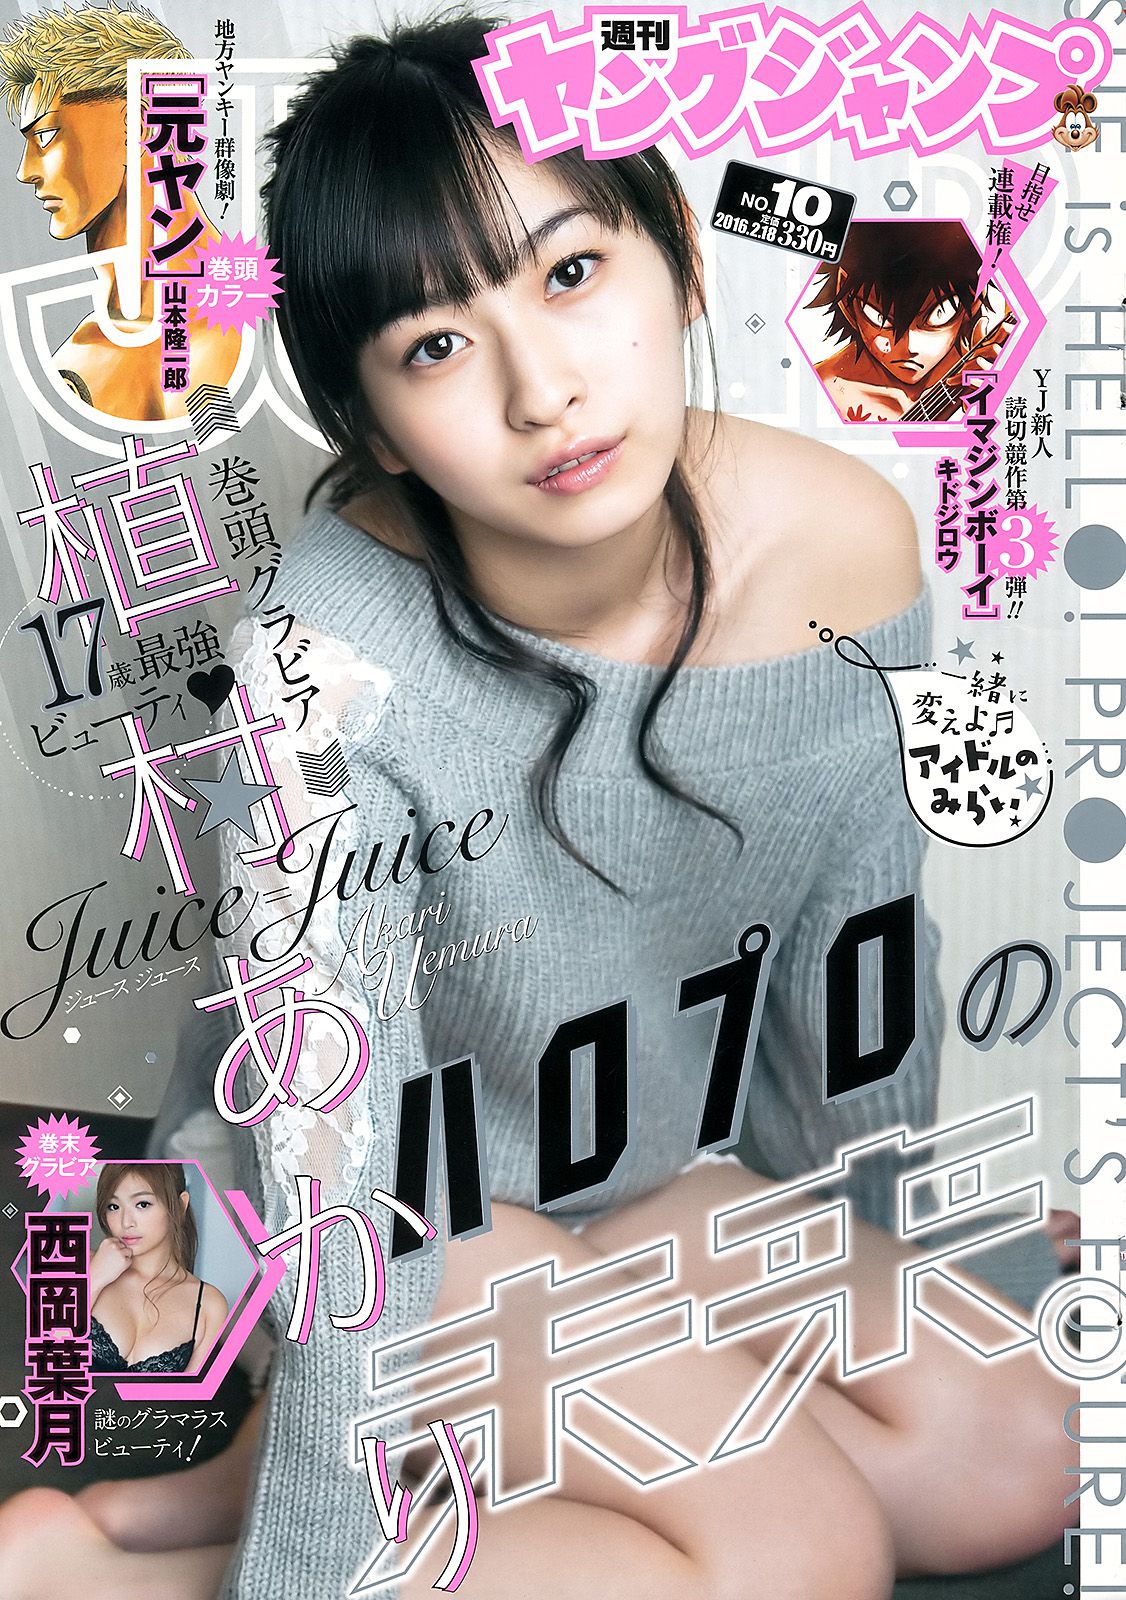 Akari Uemura Hazuki Nishioka [Weekly Young Jump] 2016 No.10 Photograph Page 12 No.ad2183